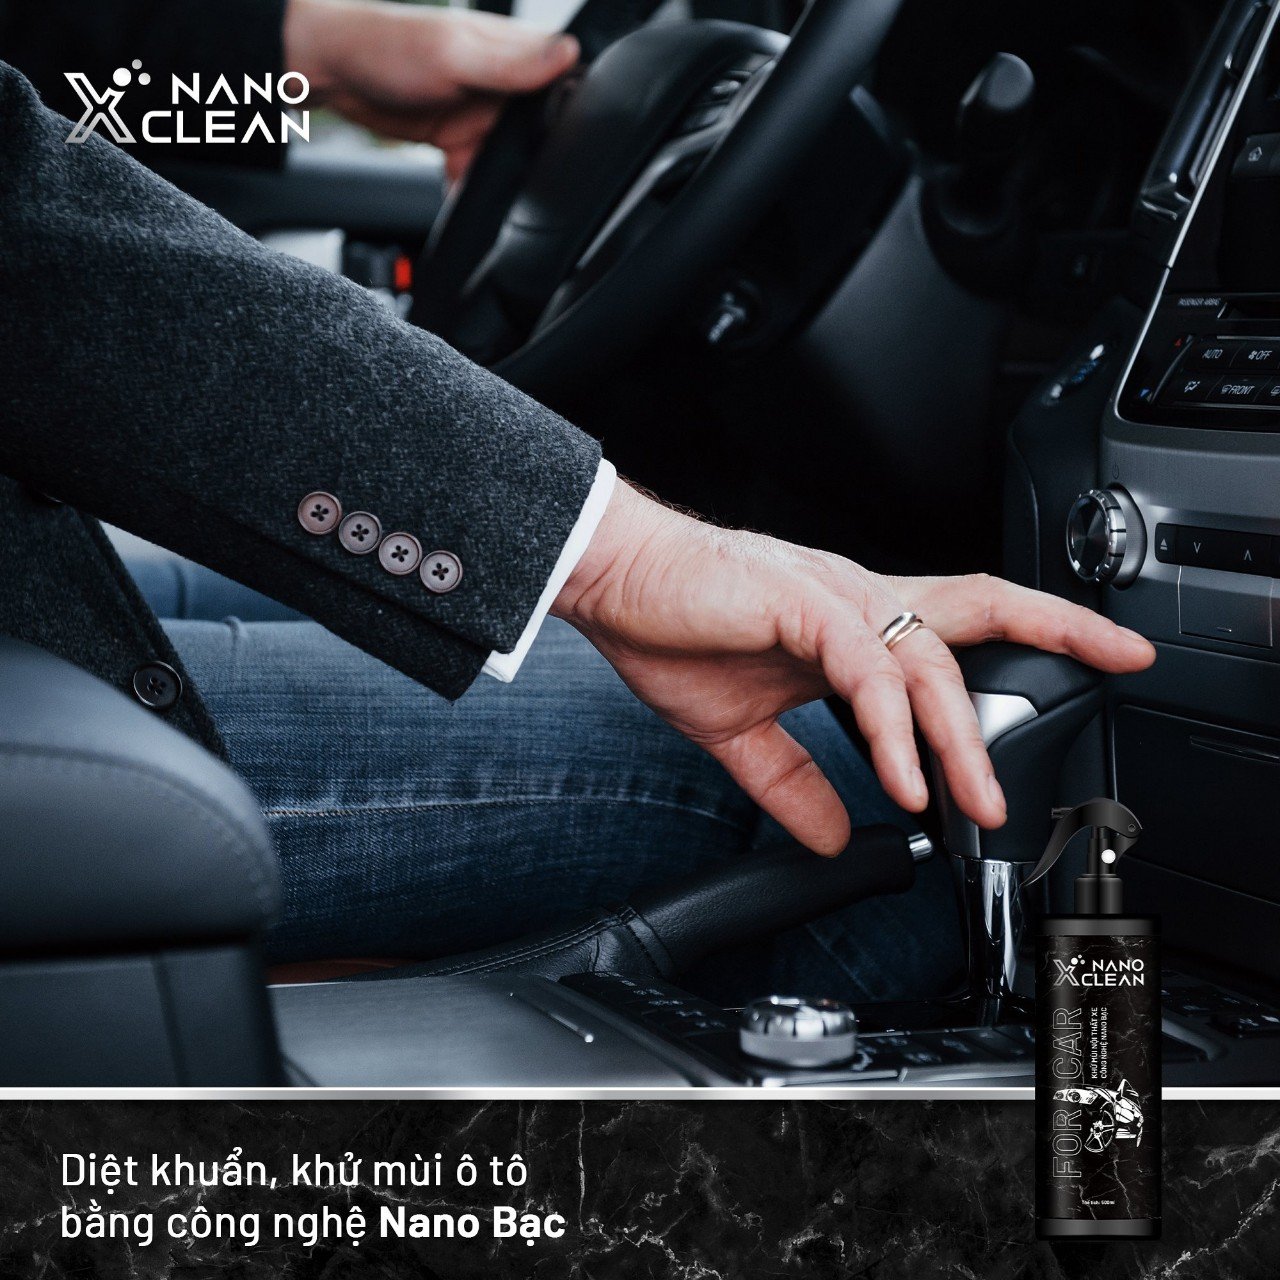 Combo 2 chai xịt diệt khuẩn khử mùi ô tô, xe hơi Nano Xclean For Car 500ml-Khử mùi Hải Sản, ẩm mốc-Vệ sinh, khử mùi nội thất-Nano Bạc AHT Corp